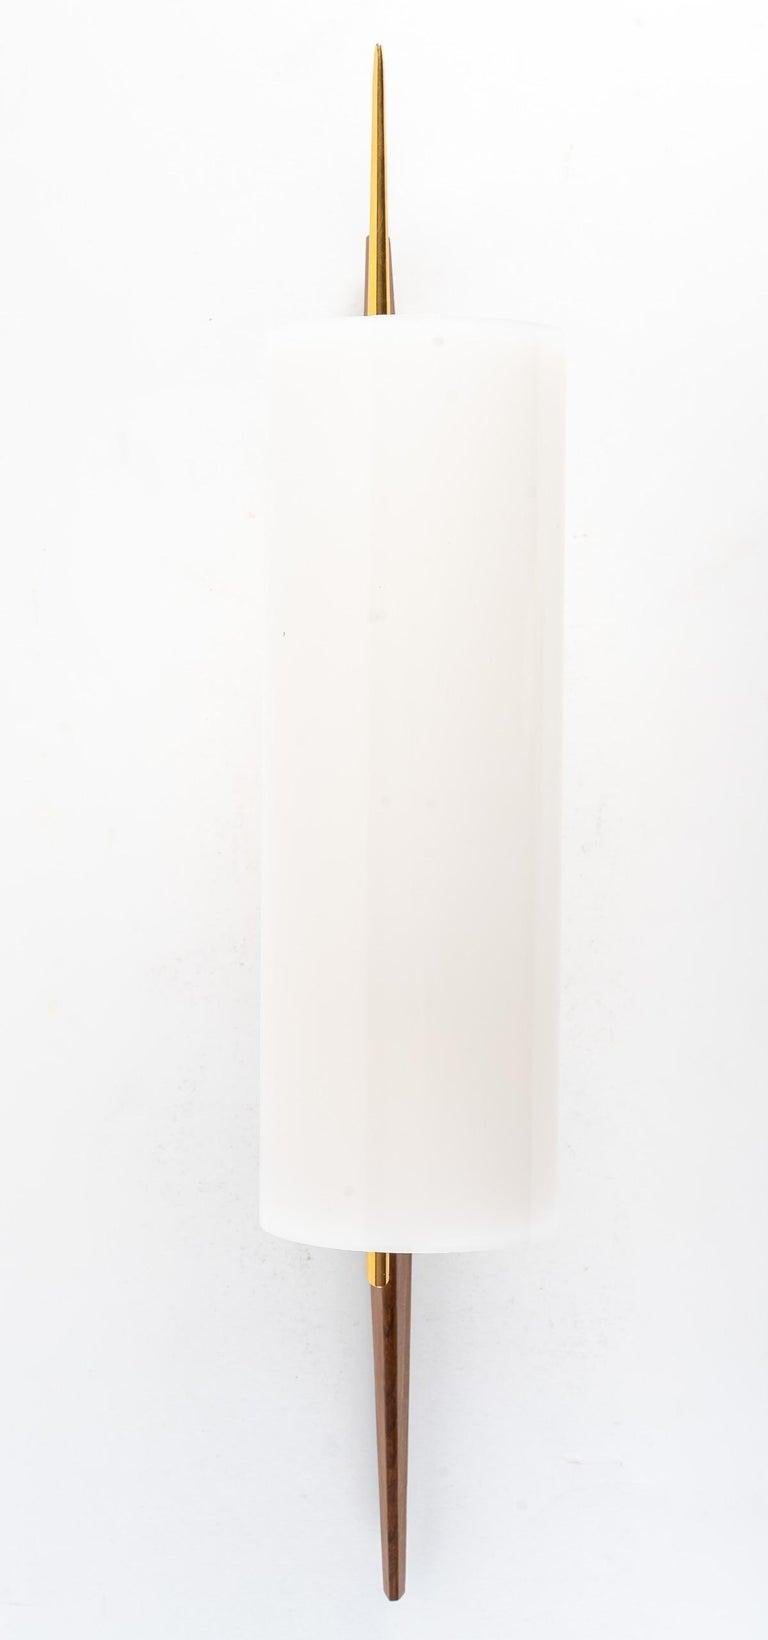 Composé d'un support mural rectangulaire en laiton doré sur lequel repose un long bras conique en bois de rose.
Au centre du bras est positionnée une rotule en laiton doré sur laquelle est posée une longue tige en laiton doré ornée d'un grand